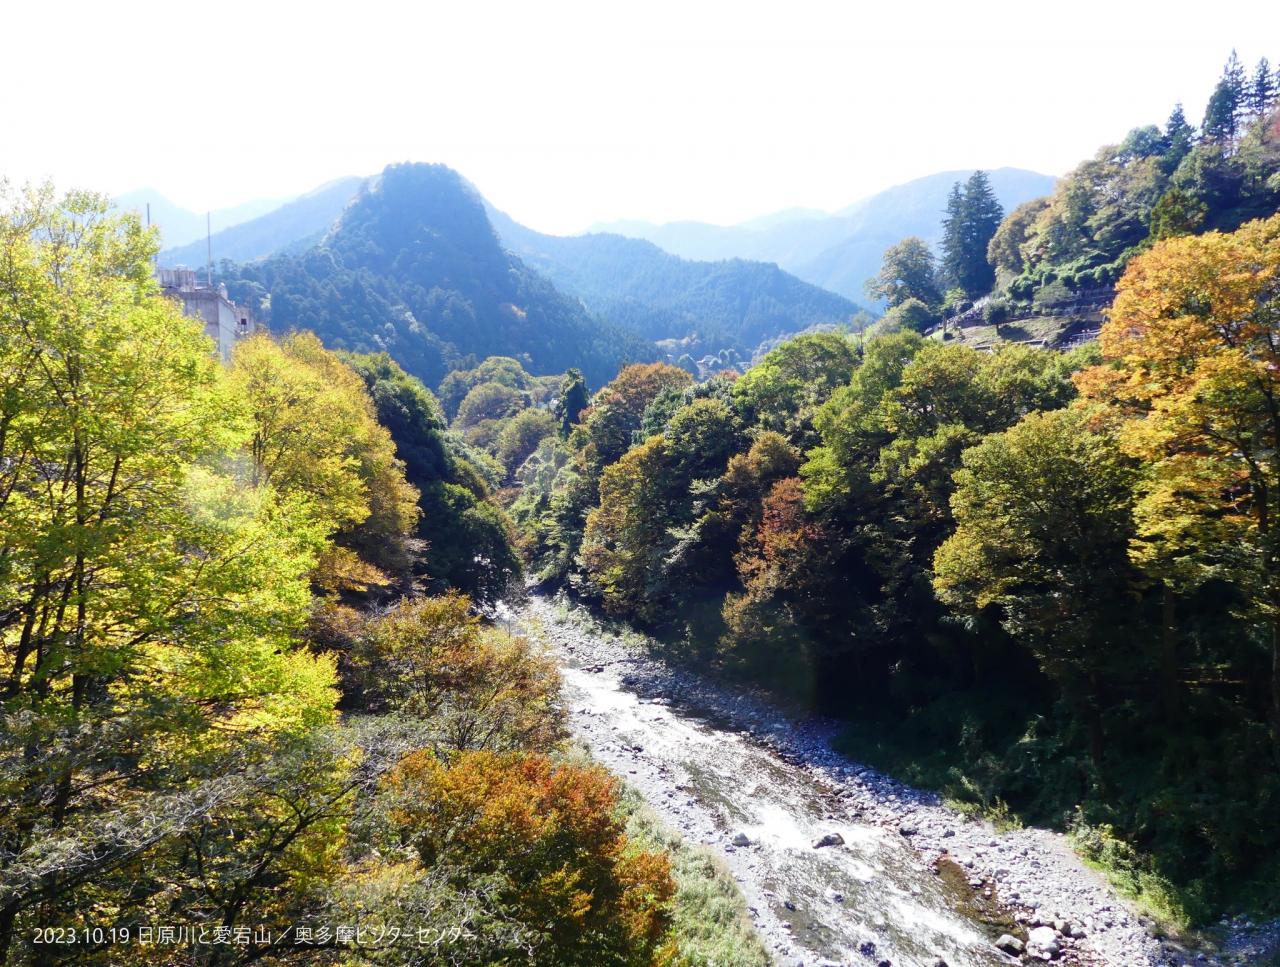 日原川の両わきのケヤキが黄色や茶色に色づいてきました。おにぎり型の愛宕山はスギの緑が濃く、コントラストが綺麗です。